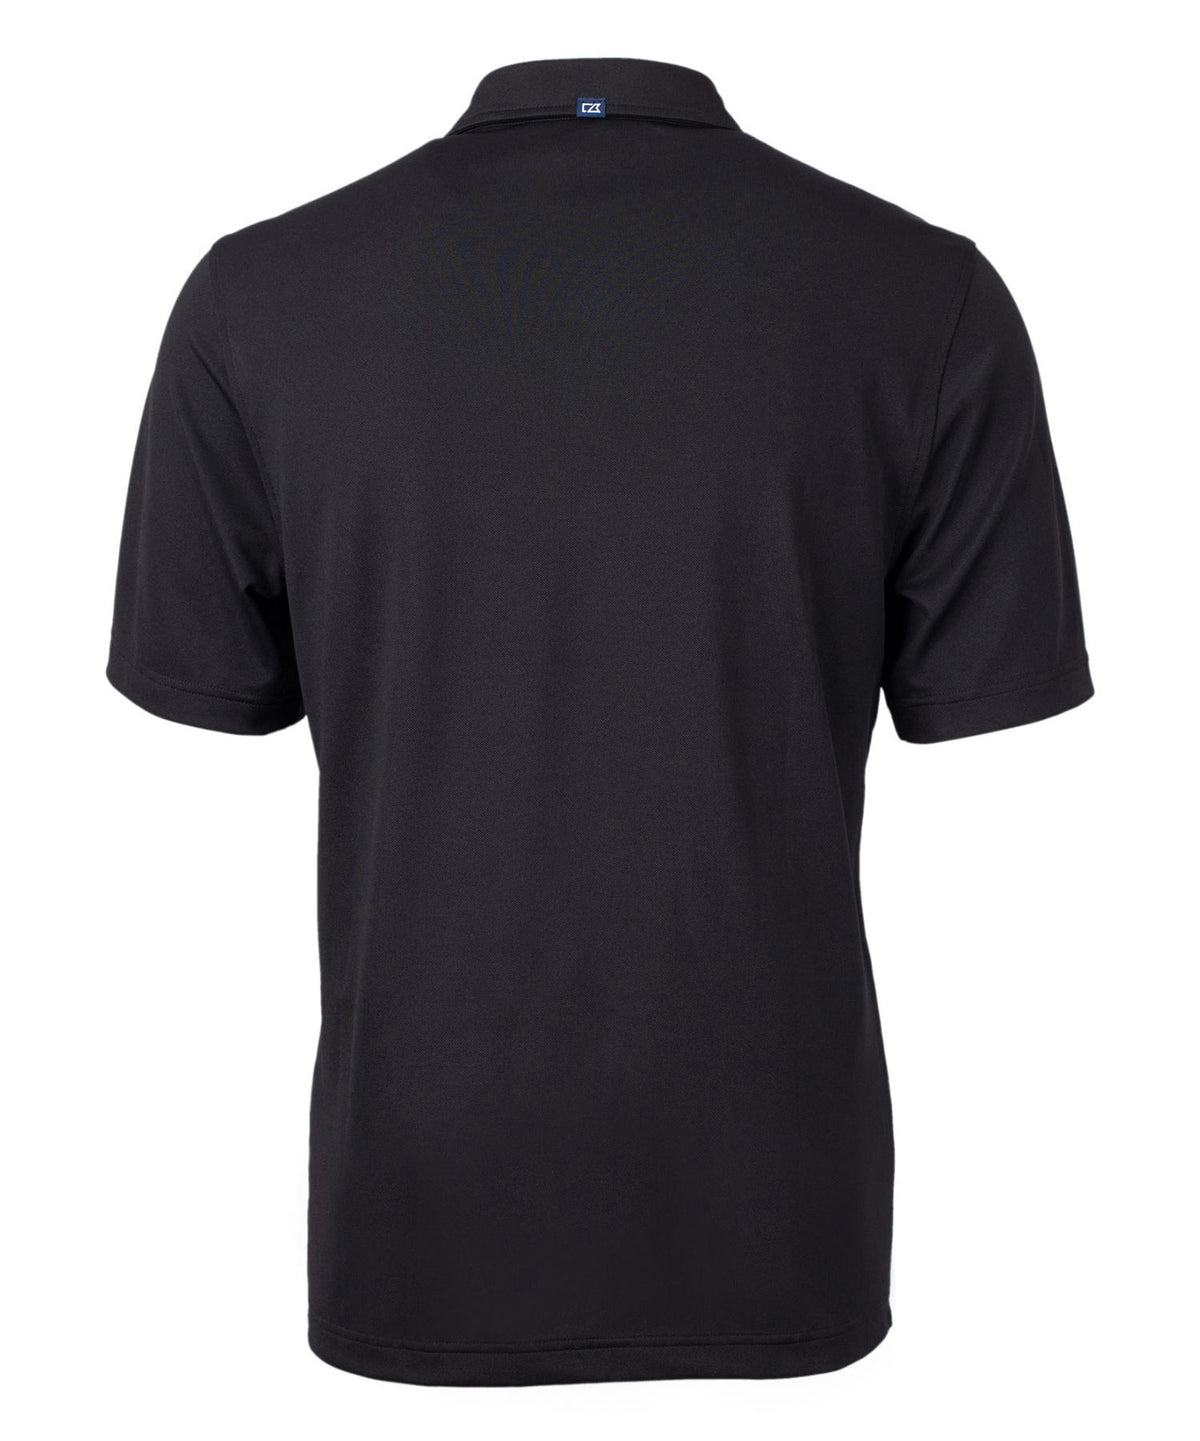 Cutter & Buck Buffalo Bills Short Sleeve Polo Knit Shirt, Men's Big & Tall